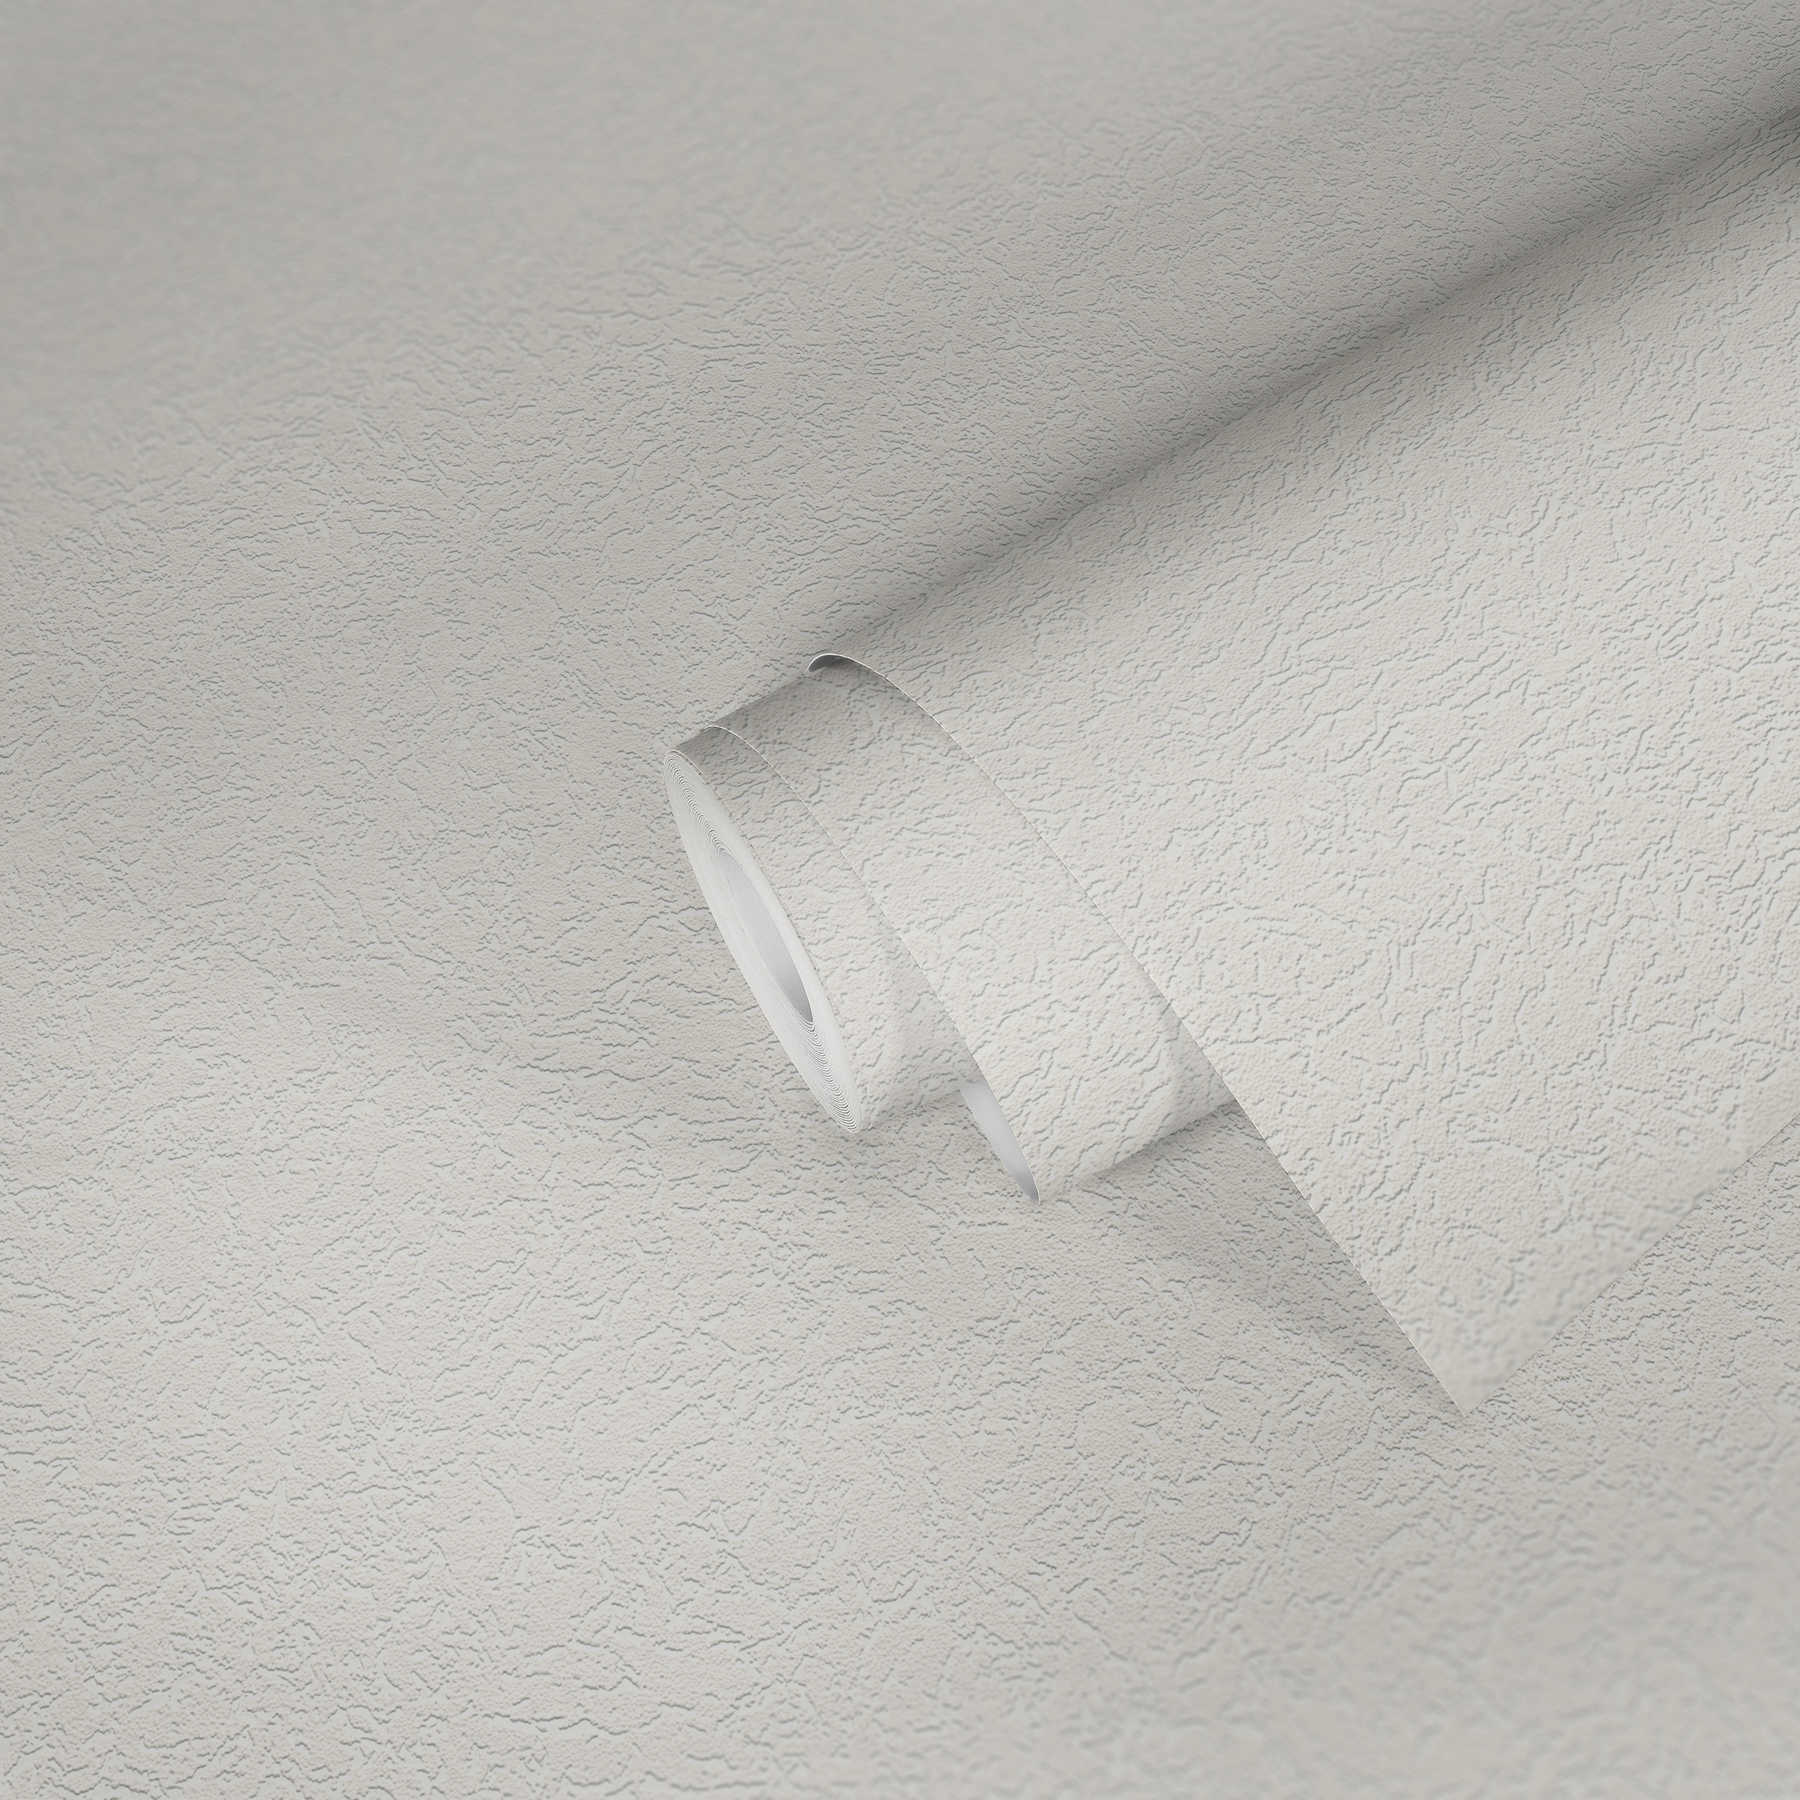             papier peint intissé aspect rugueux avec motif structuré - blanc
        